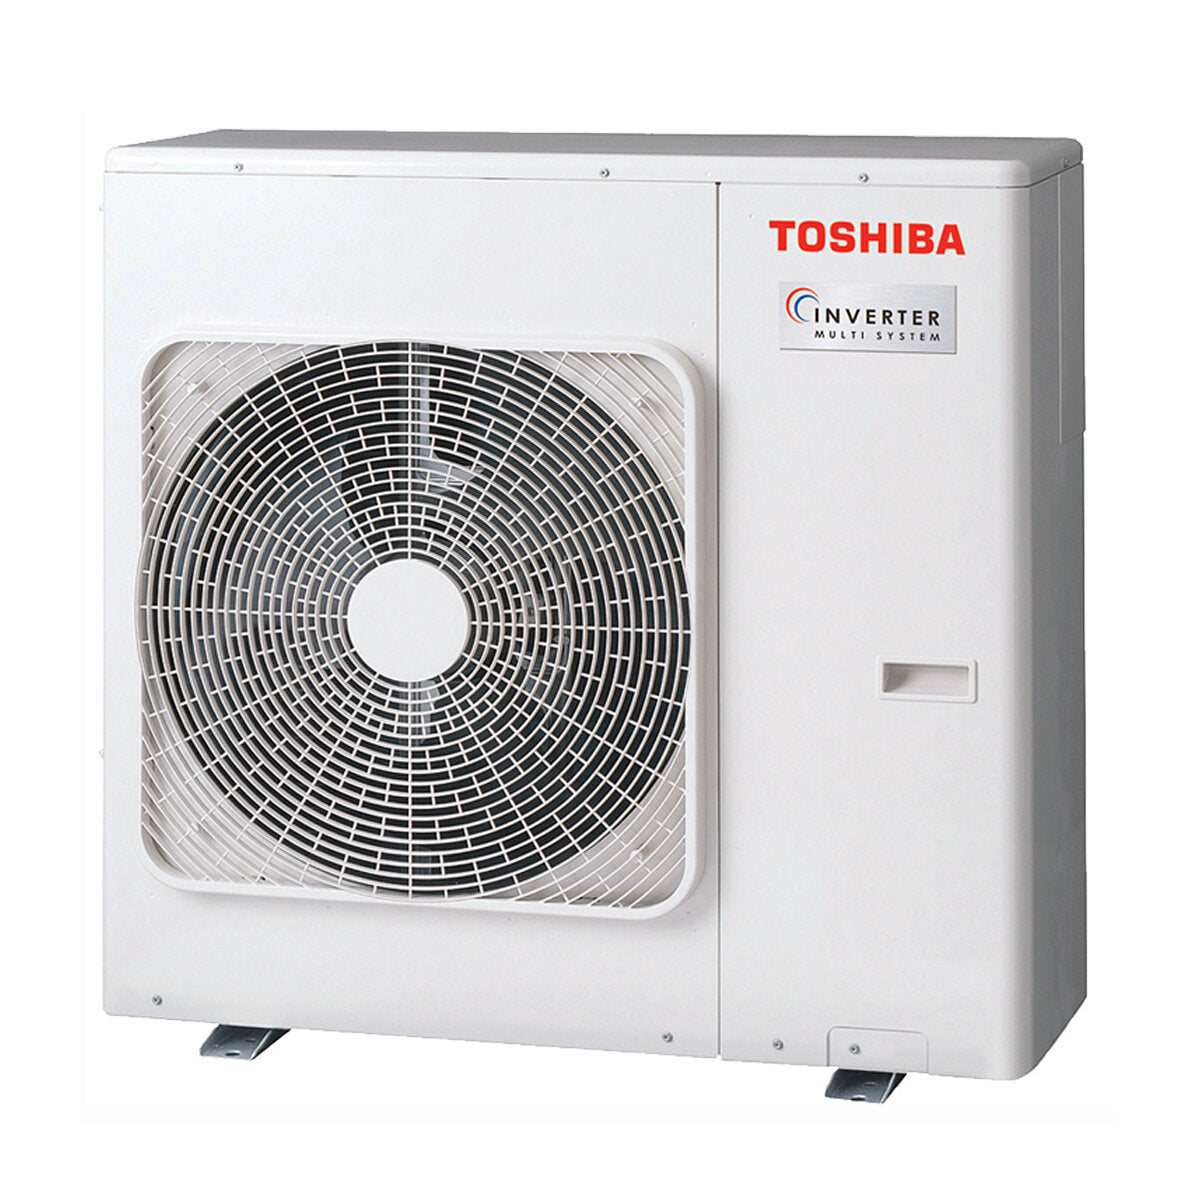 Toshiba Ductable Air Conditioner U2 penta split 9000 + 9000 + 9000 + 12000 + 12000 BTU inverter A++ unité extérieure 10,0 kW